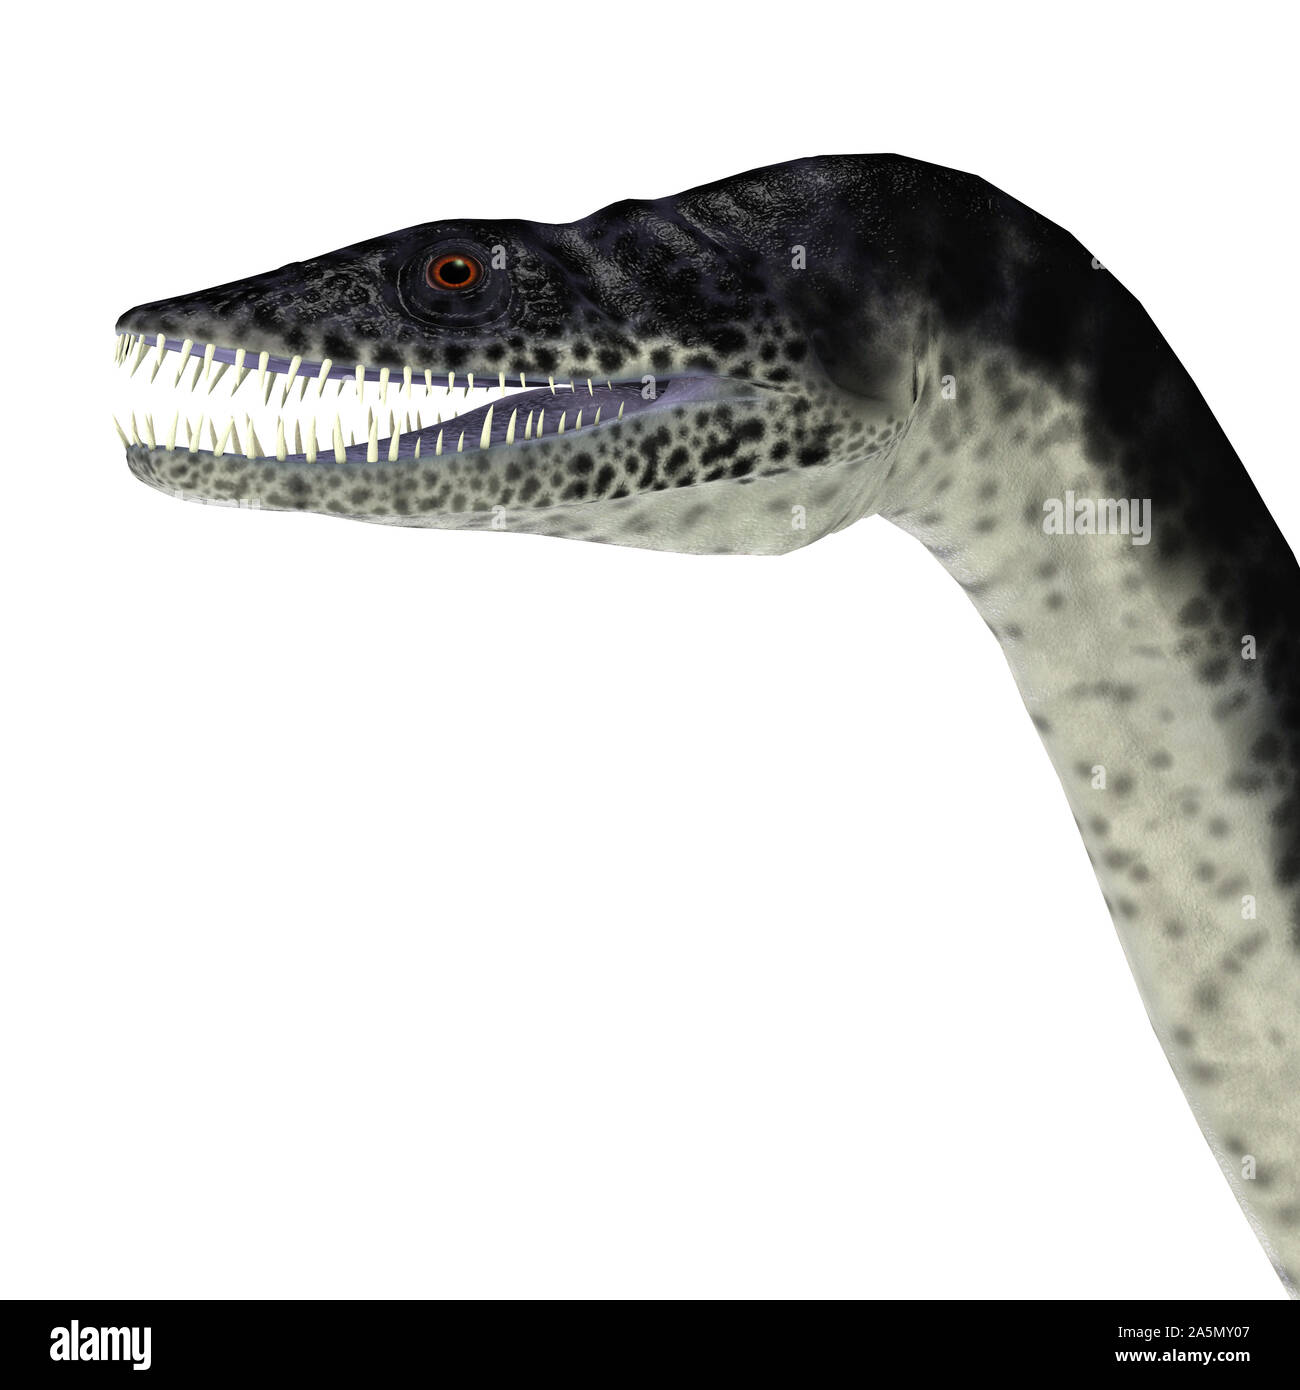 Plesiosaurus était un carnivore reptile marin qui vivait dans les mers qui entourent l'Angleterre durant la période jurassique. Banque D'Images